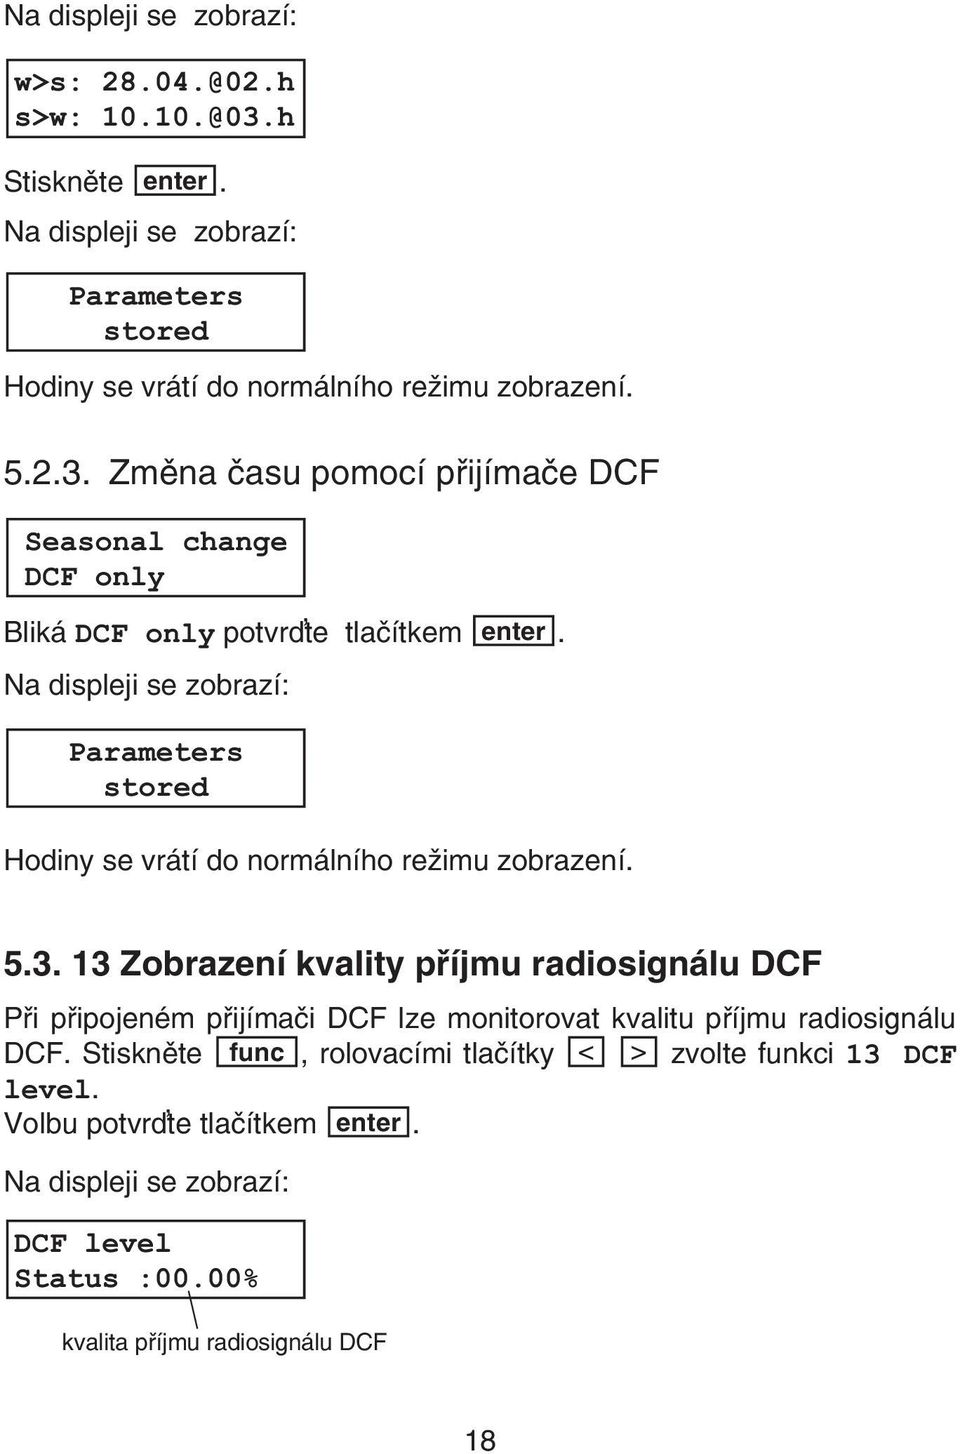 13 Zobrazení kvality pøíjmu radiosignálu DCF Pøi pøipojeném pøijímaèi DCF lze monitorovat kvalitu pøíjmu radiosignálu DCF.